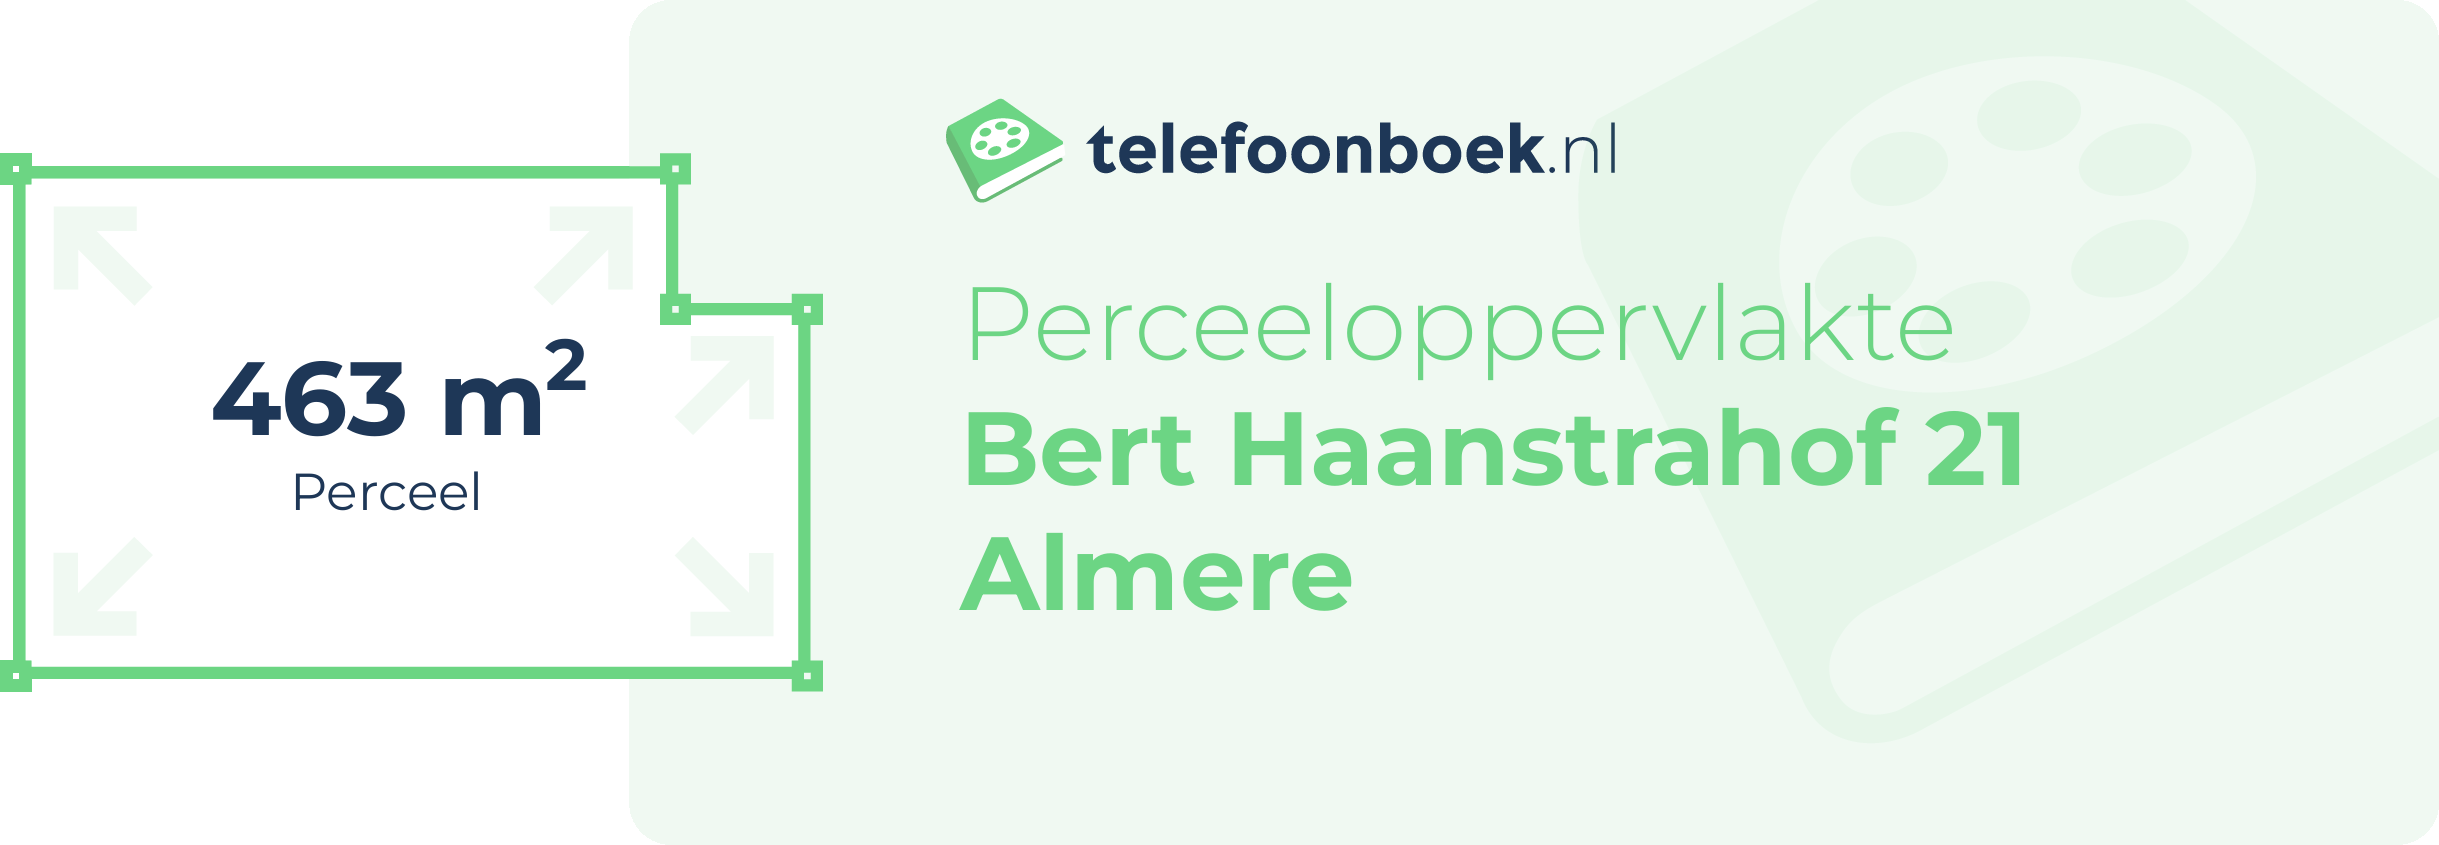 Perceeloppervlakte Bert Haanstrahof 21 Almere